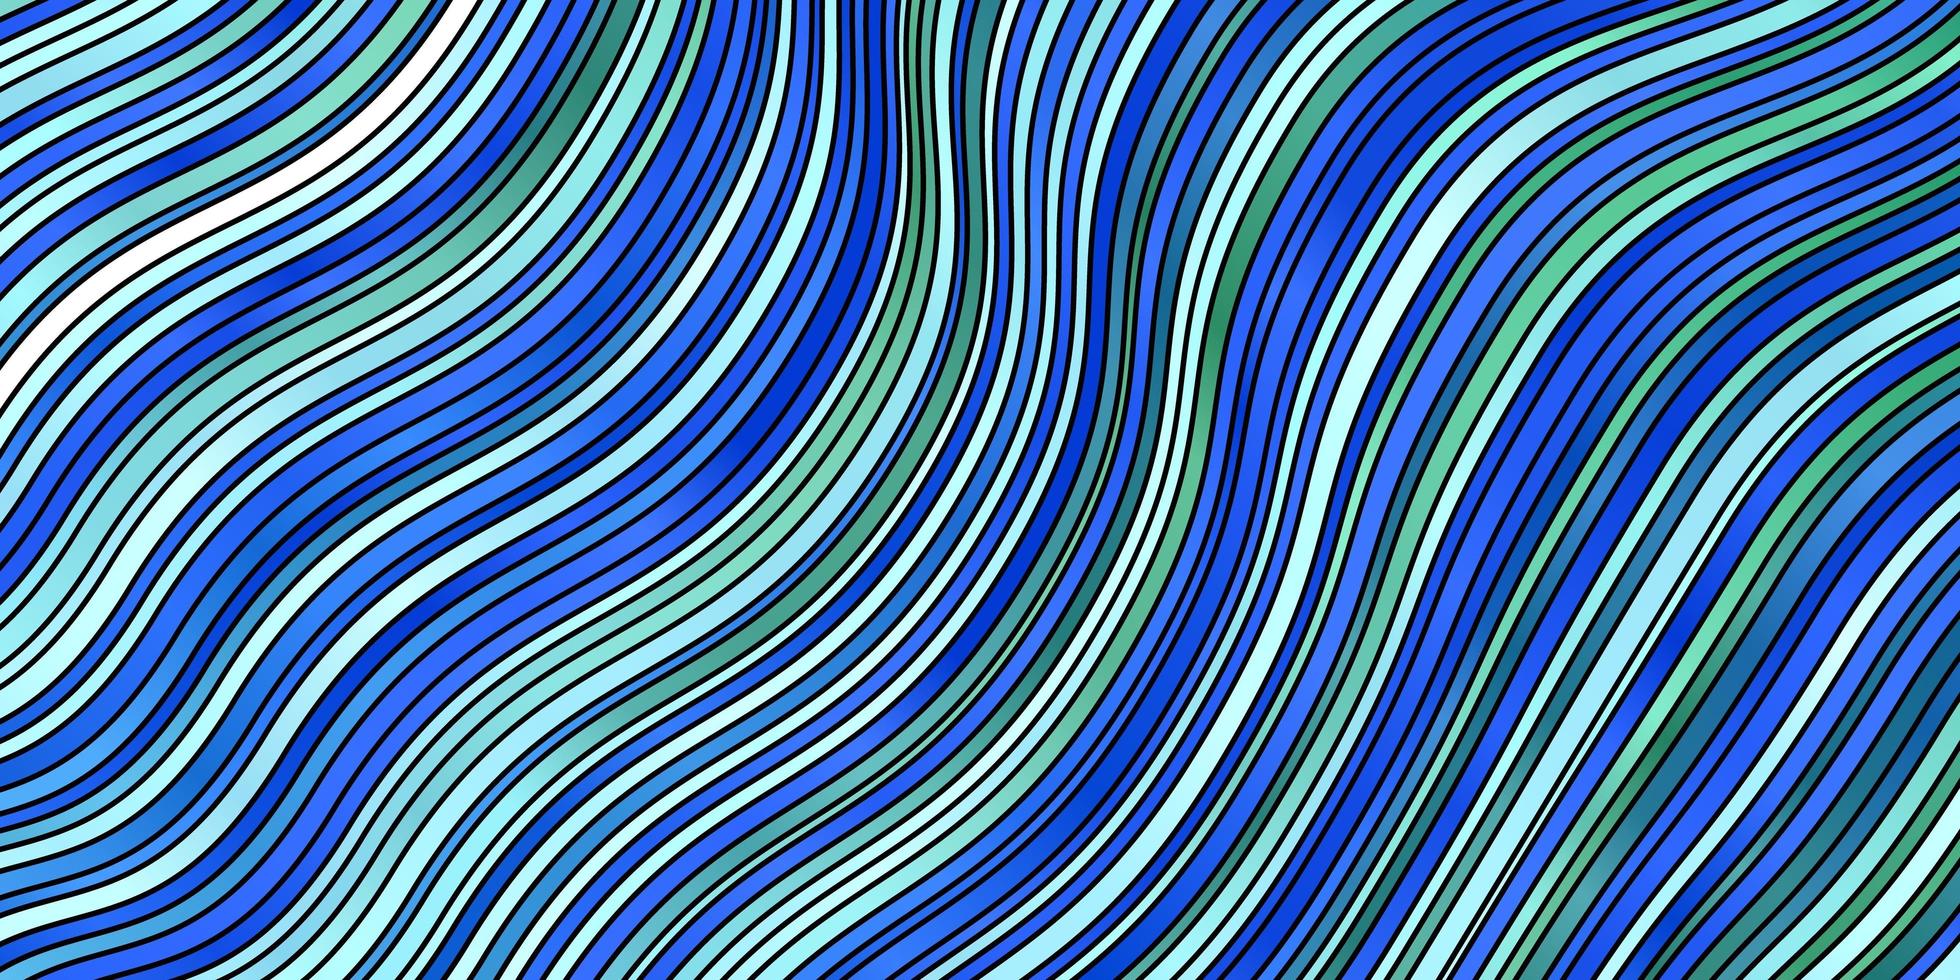 ljusblått, grönt vektormönster med kurvor. abstrakt lutningsillustration med sneda linjer. design för din företagsreklam. vektor